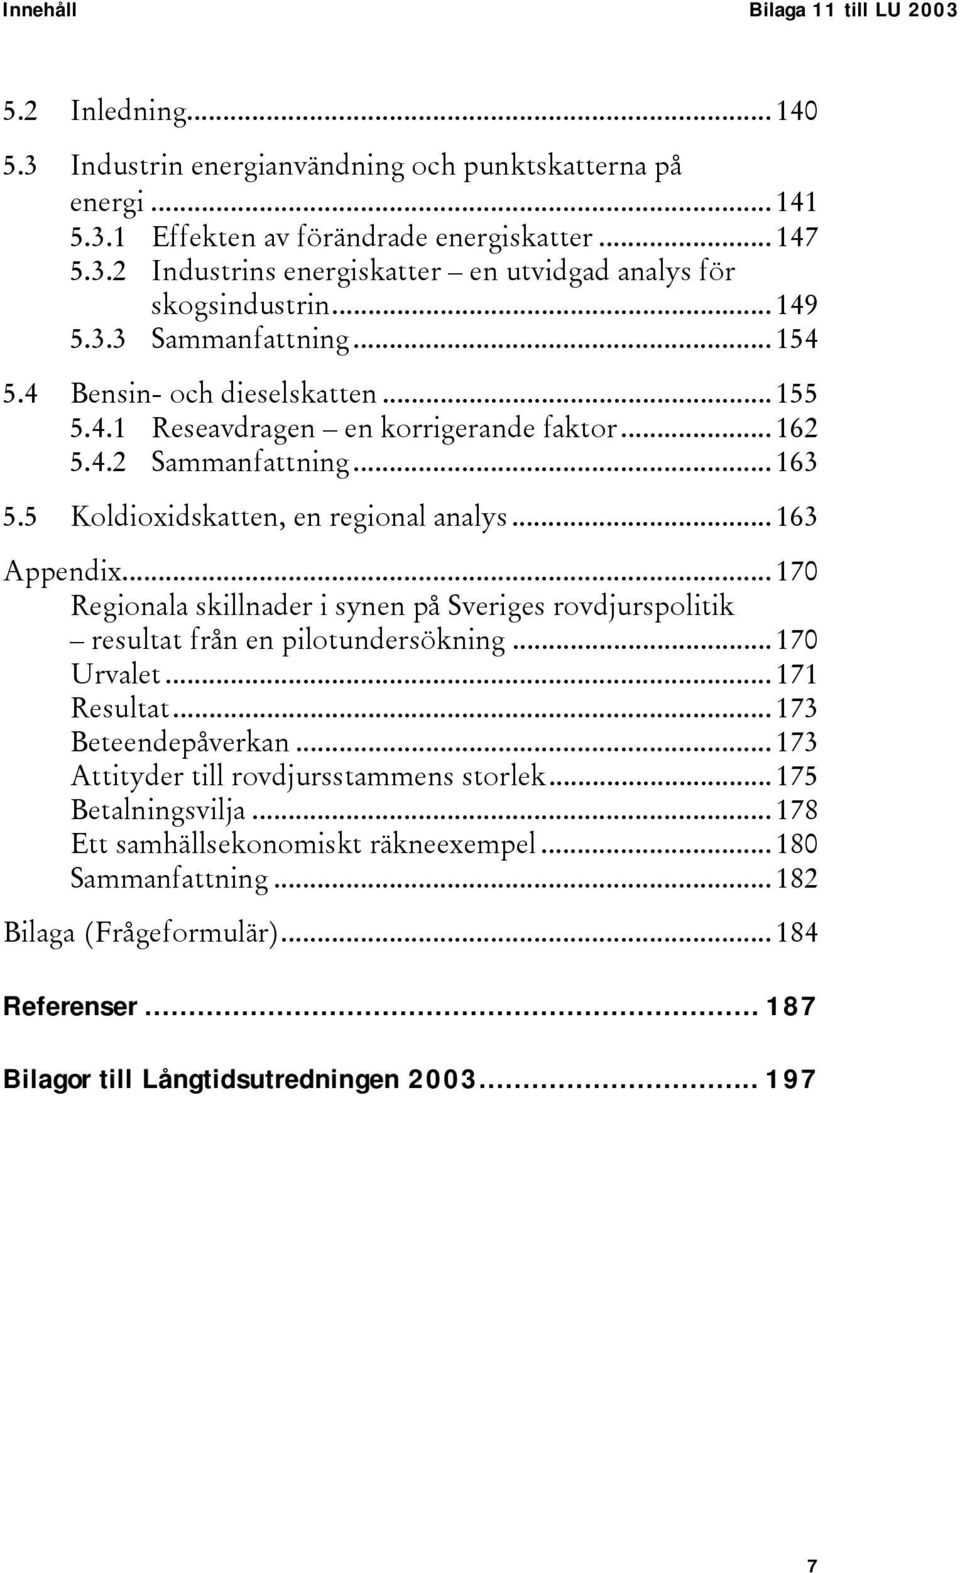 ..170 Regionala skillnader i synen på Sveriges rovdjurspolitik resultat från en pilotundersökning...170 Urvalet...171 Resultat...173 Beteendepåverkan...173 Attityder till rovdjursstammens storlek.